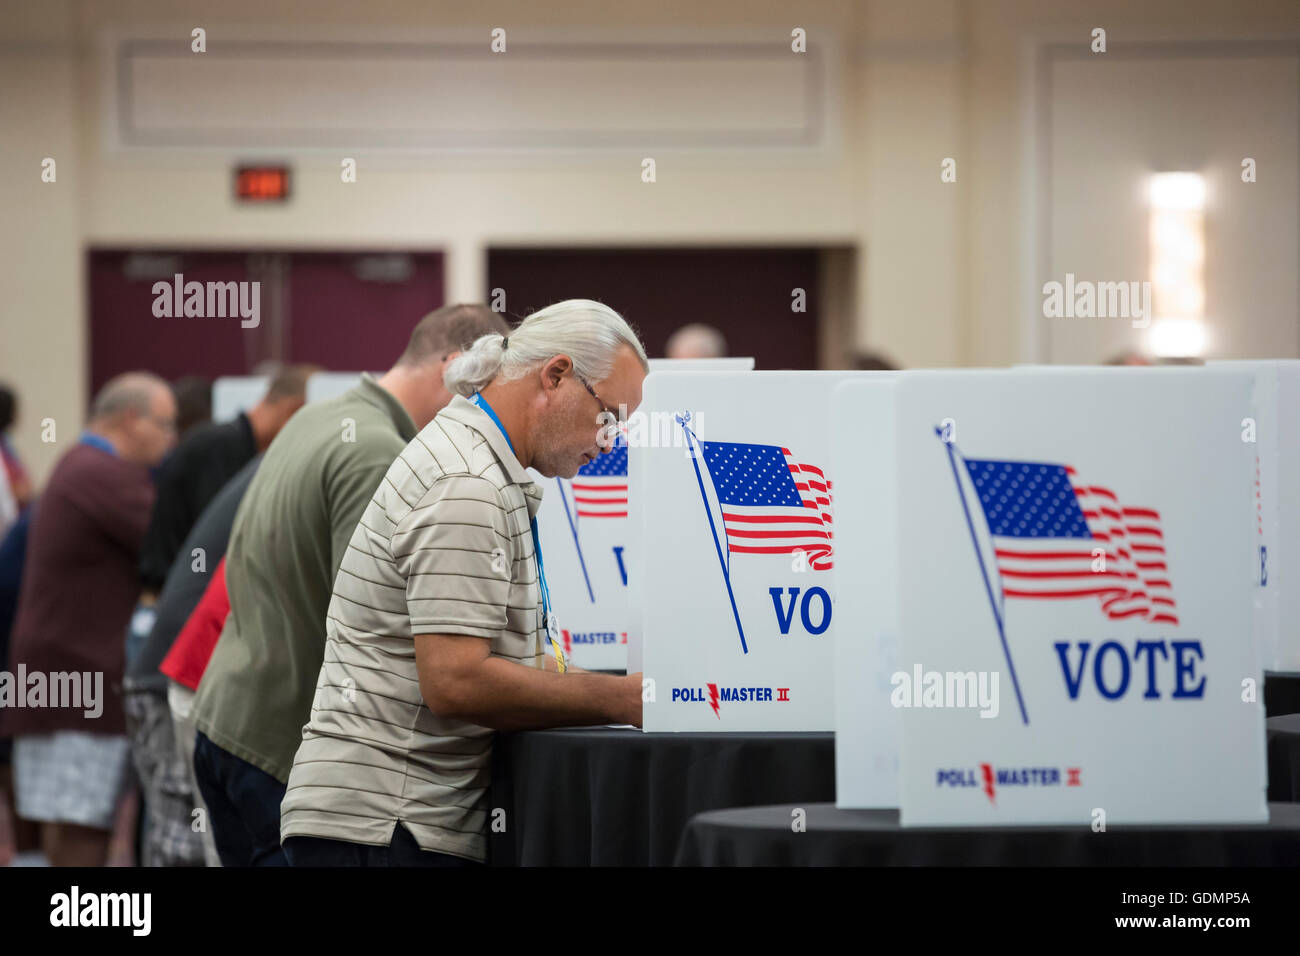 Las Vegas, Nevada - Los delegados a la Convención sindicato Teamsters votar para nominar candidatos en la elección de 2016 del sindicato. Foto de stock